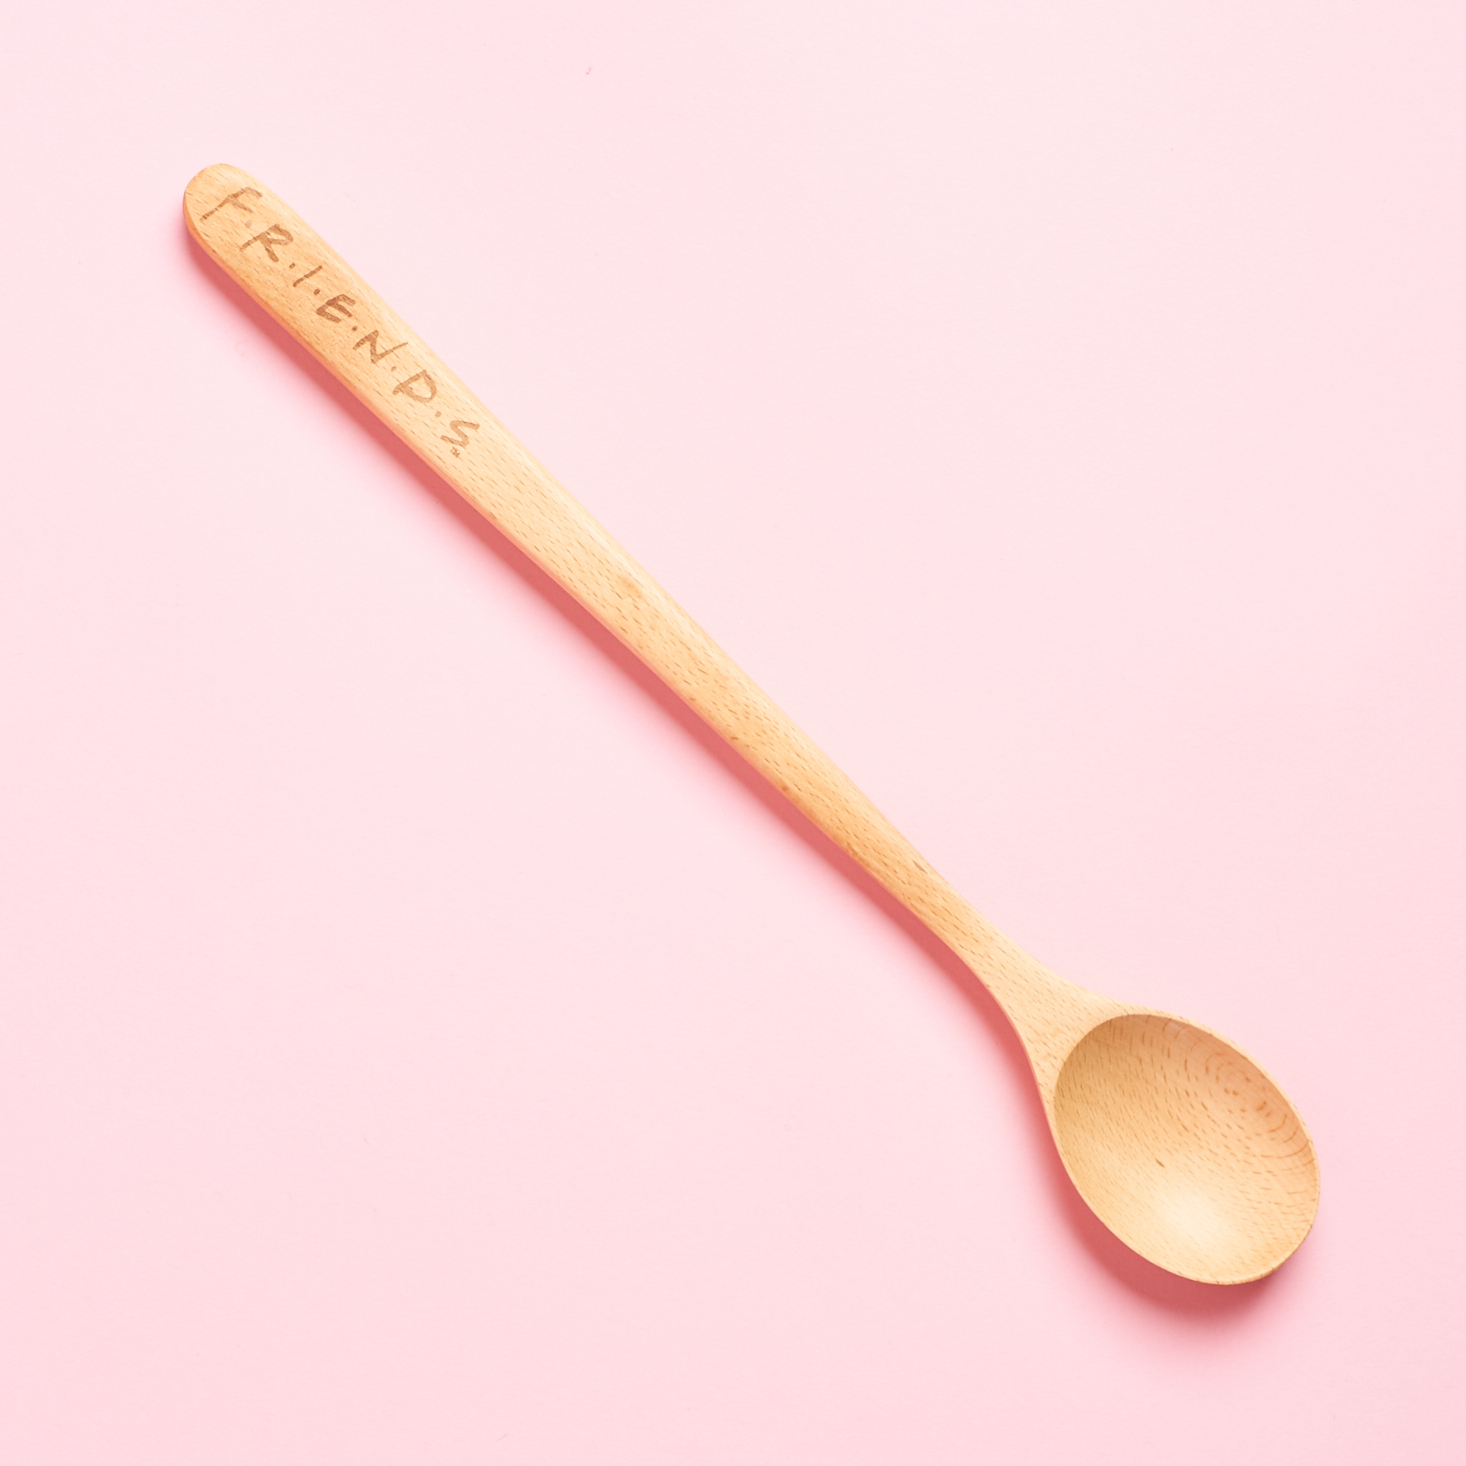 Friends wooden spoon